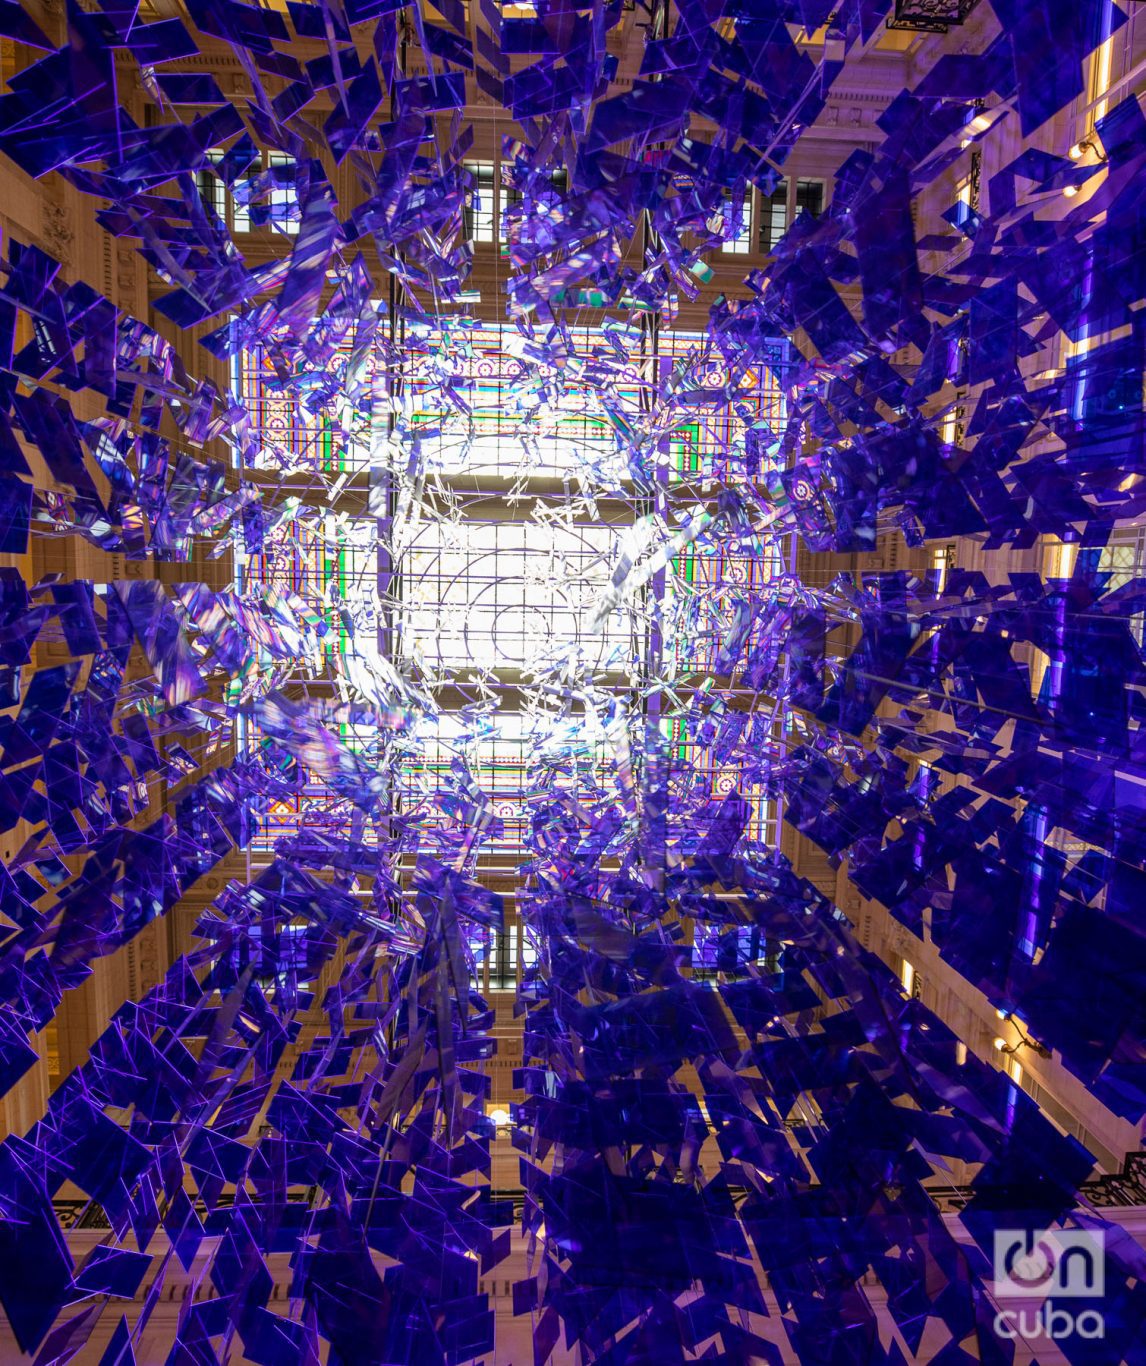 "La esfera azul", de Julio Le Parc, está compuesta por 3 mil piezas de acrílico, tanza y metal. Foto: Kaloian.